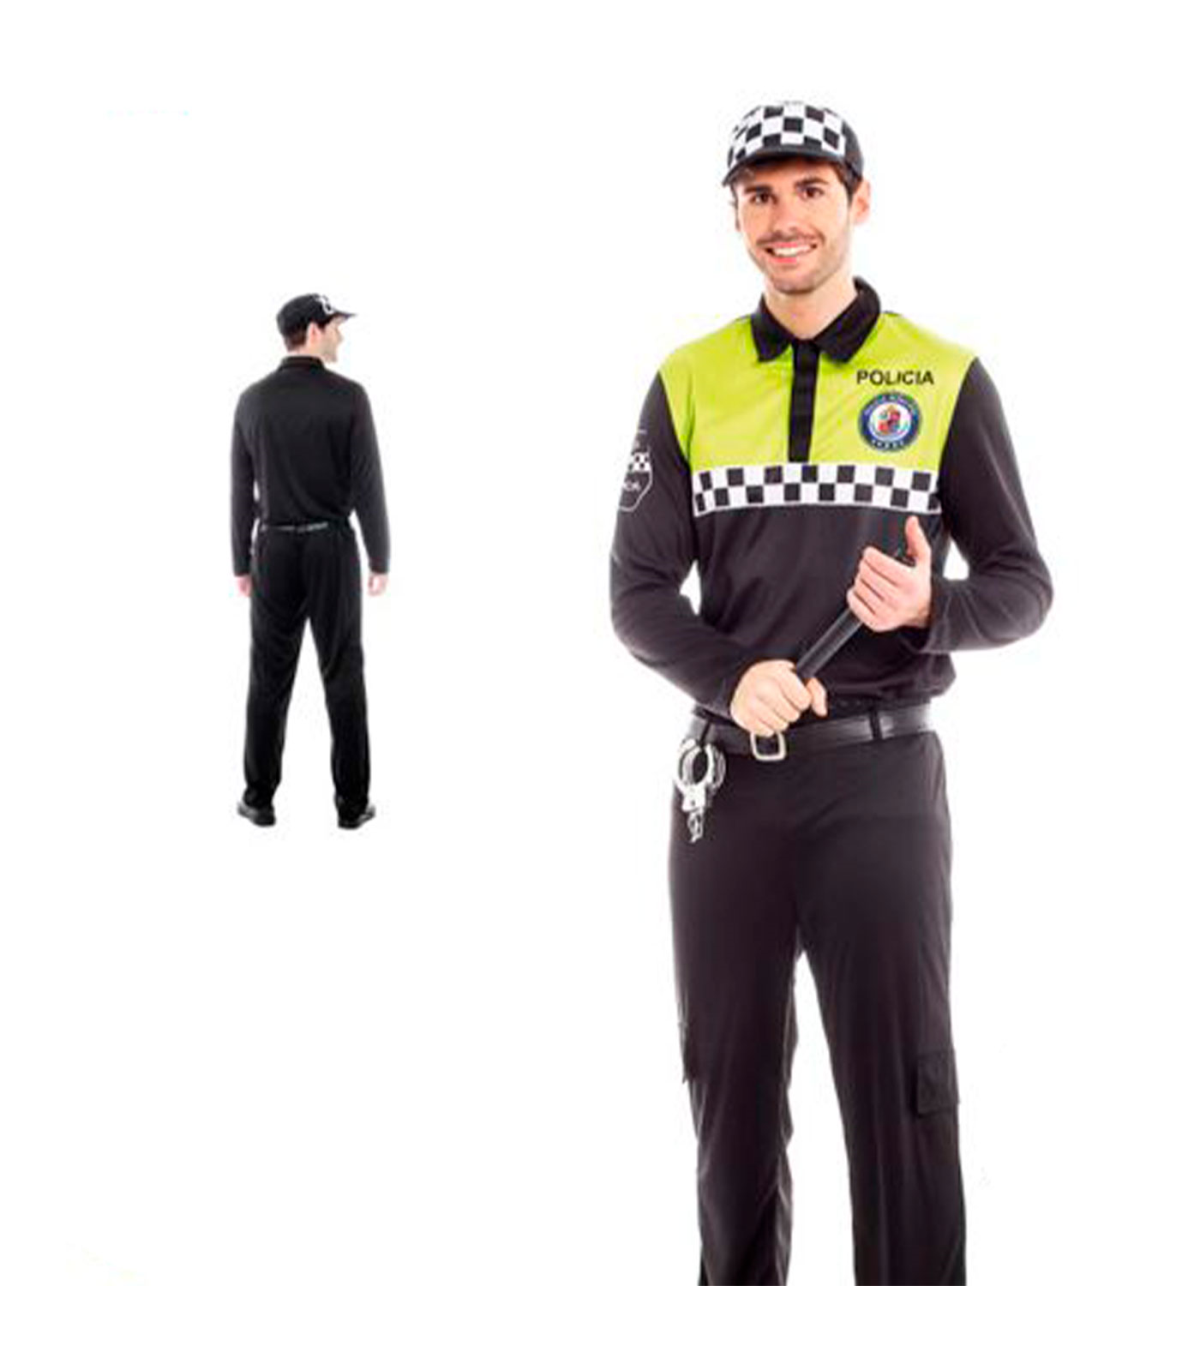 Tradineur - Disfraz de policía adulto, agente policía local, fibra